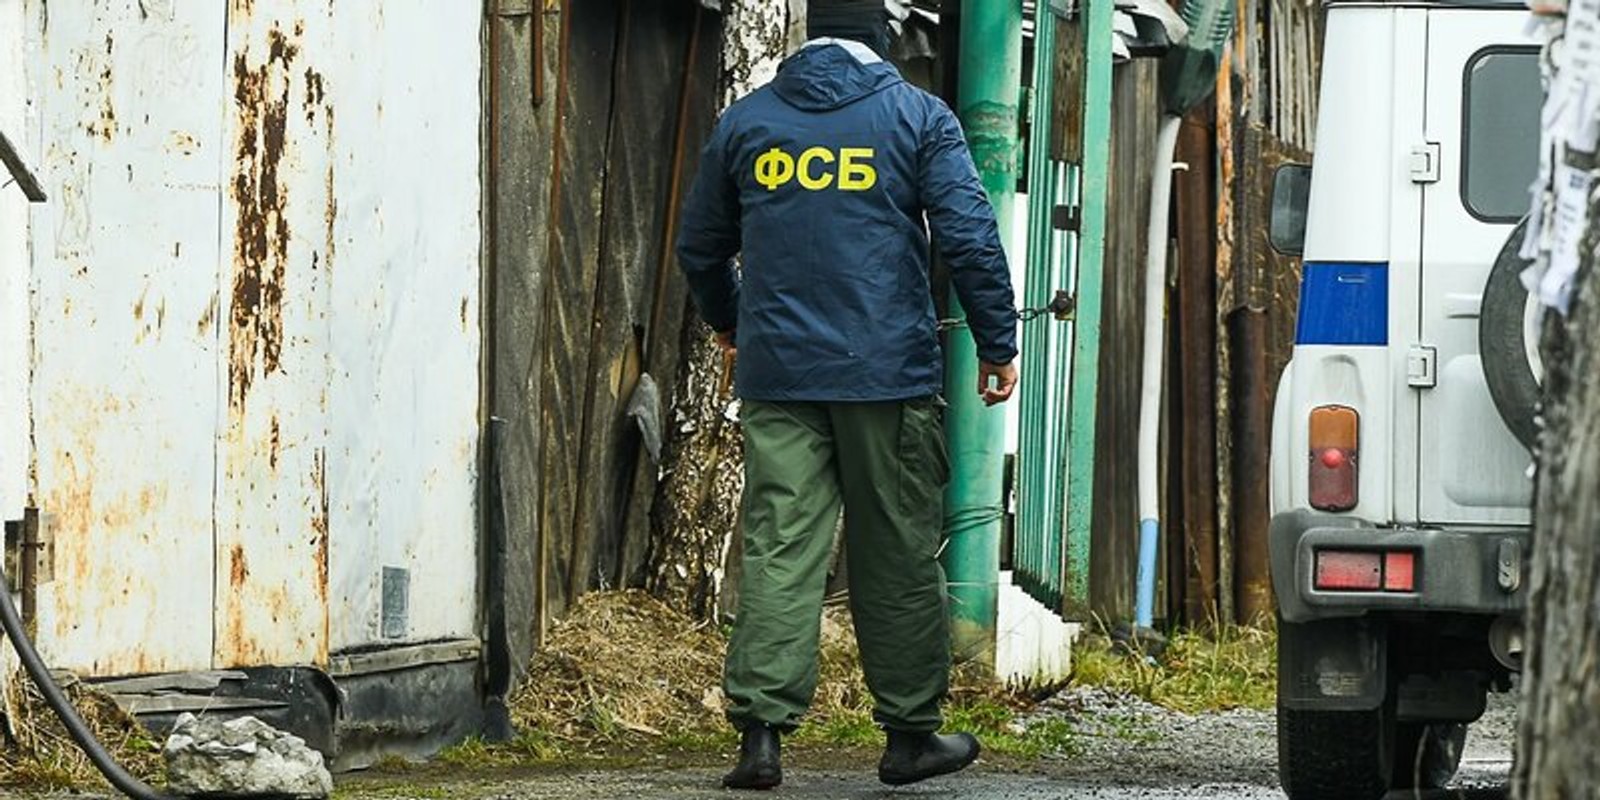 ФСБ відзвітувала про затримання 15 громадян Росії і Таджикистану в Єкатеринбурзі. П'ятьох заарештували, інших виженуть з країни